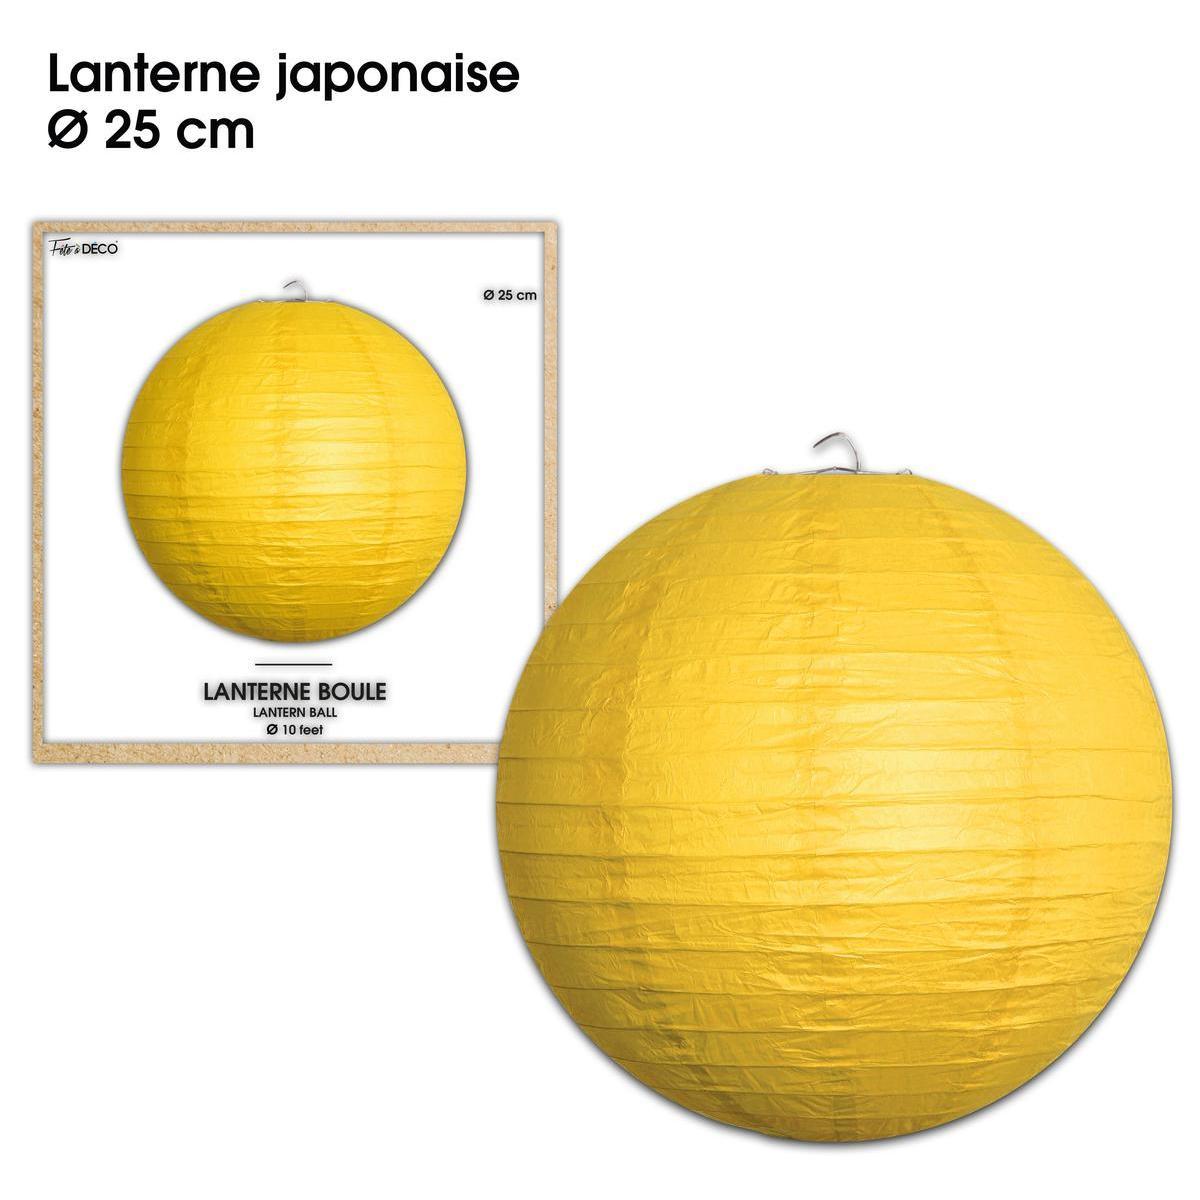 Lanterne japonaise ø 25 cm jaune